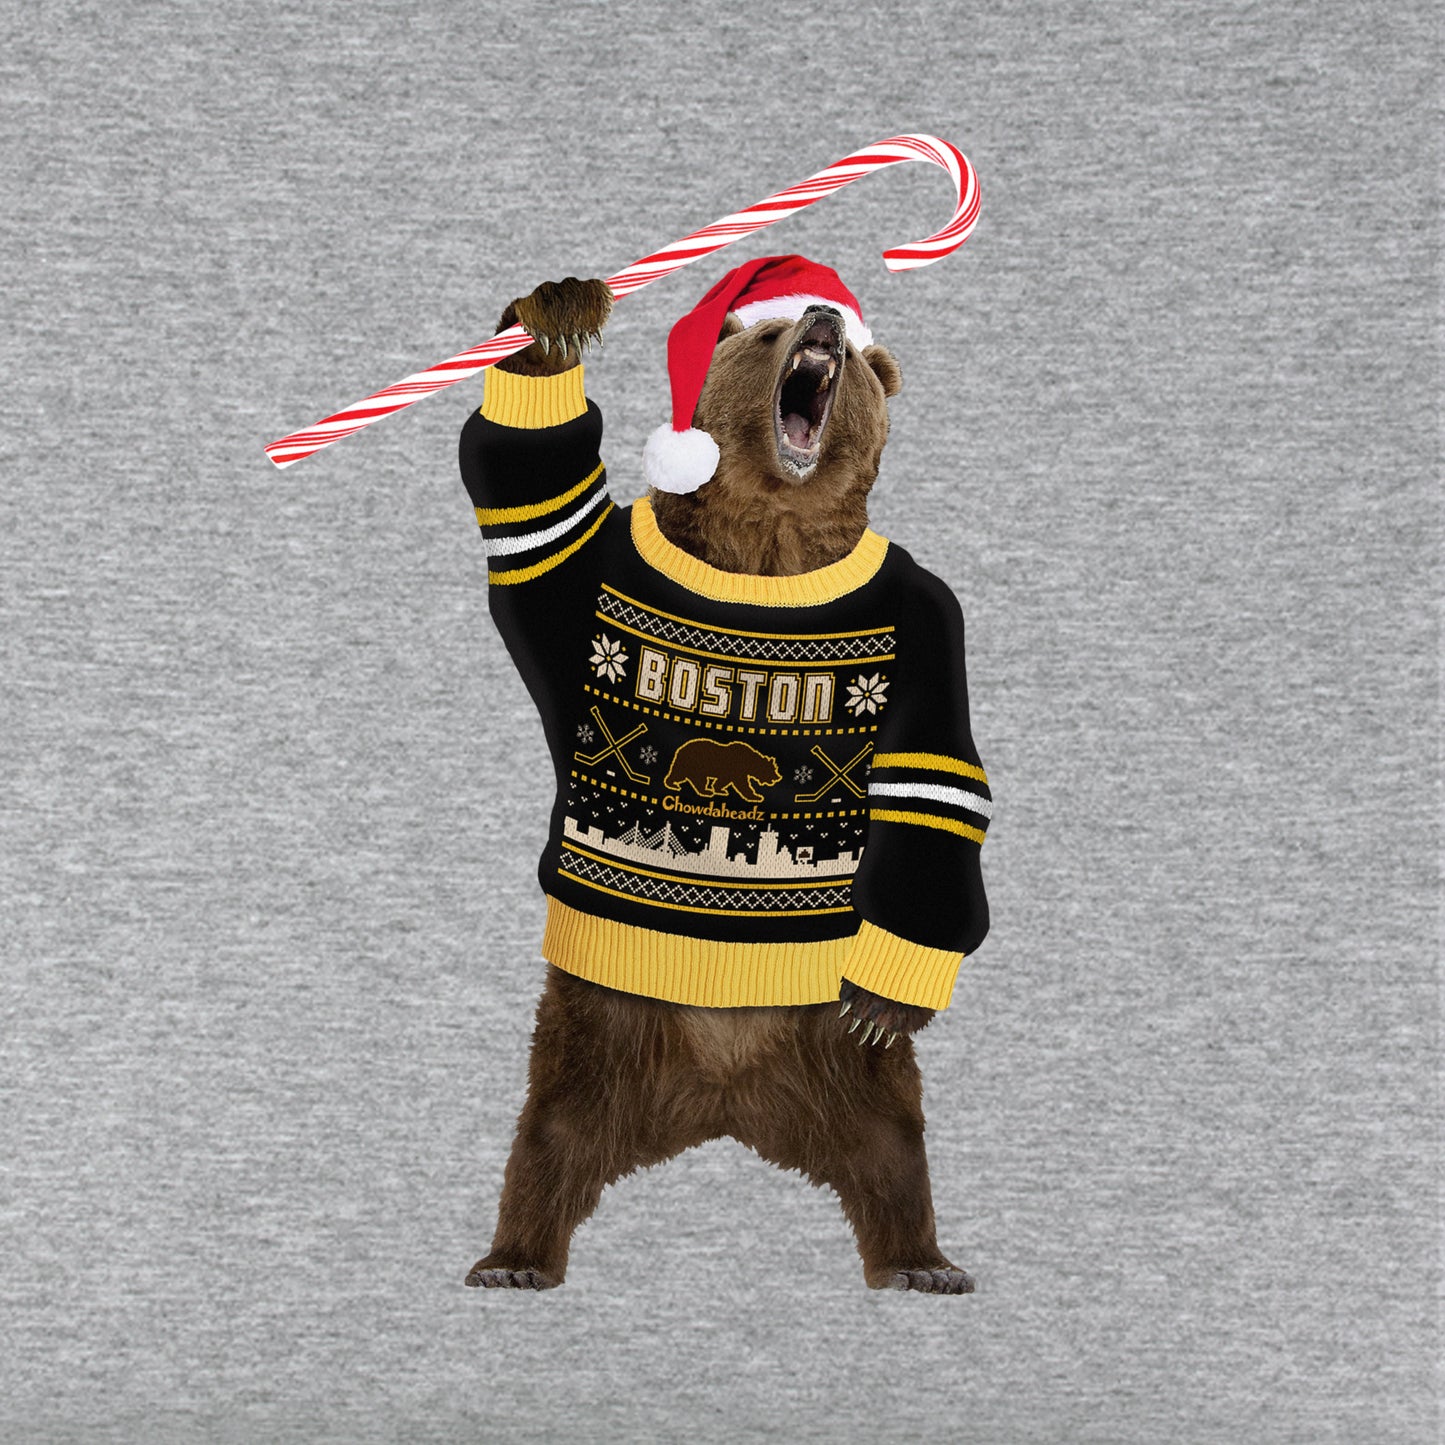 Boston Holiday Sweater Bear Youth T-Shirt - Chowdaheadz